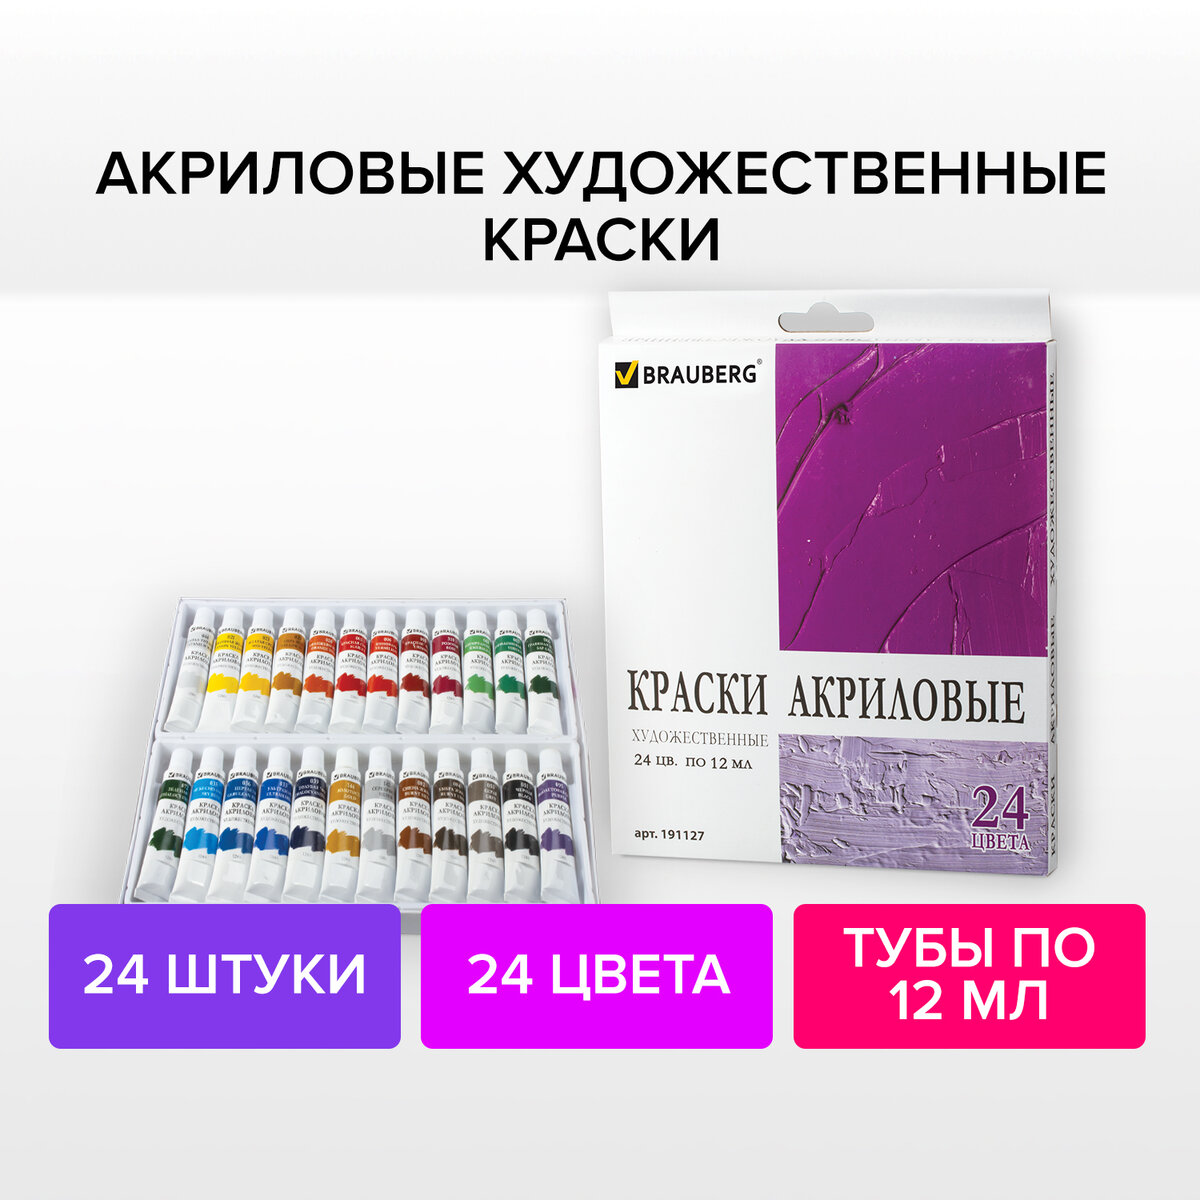 Акриловые краски Brauberg - отзывы, рейтинг и оценки покупателей -маркетплейс megamarket.ru